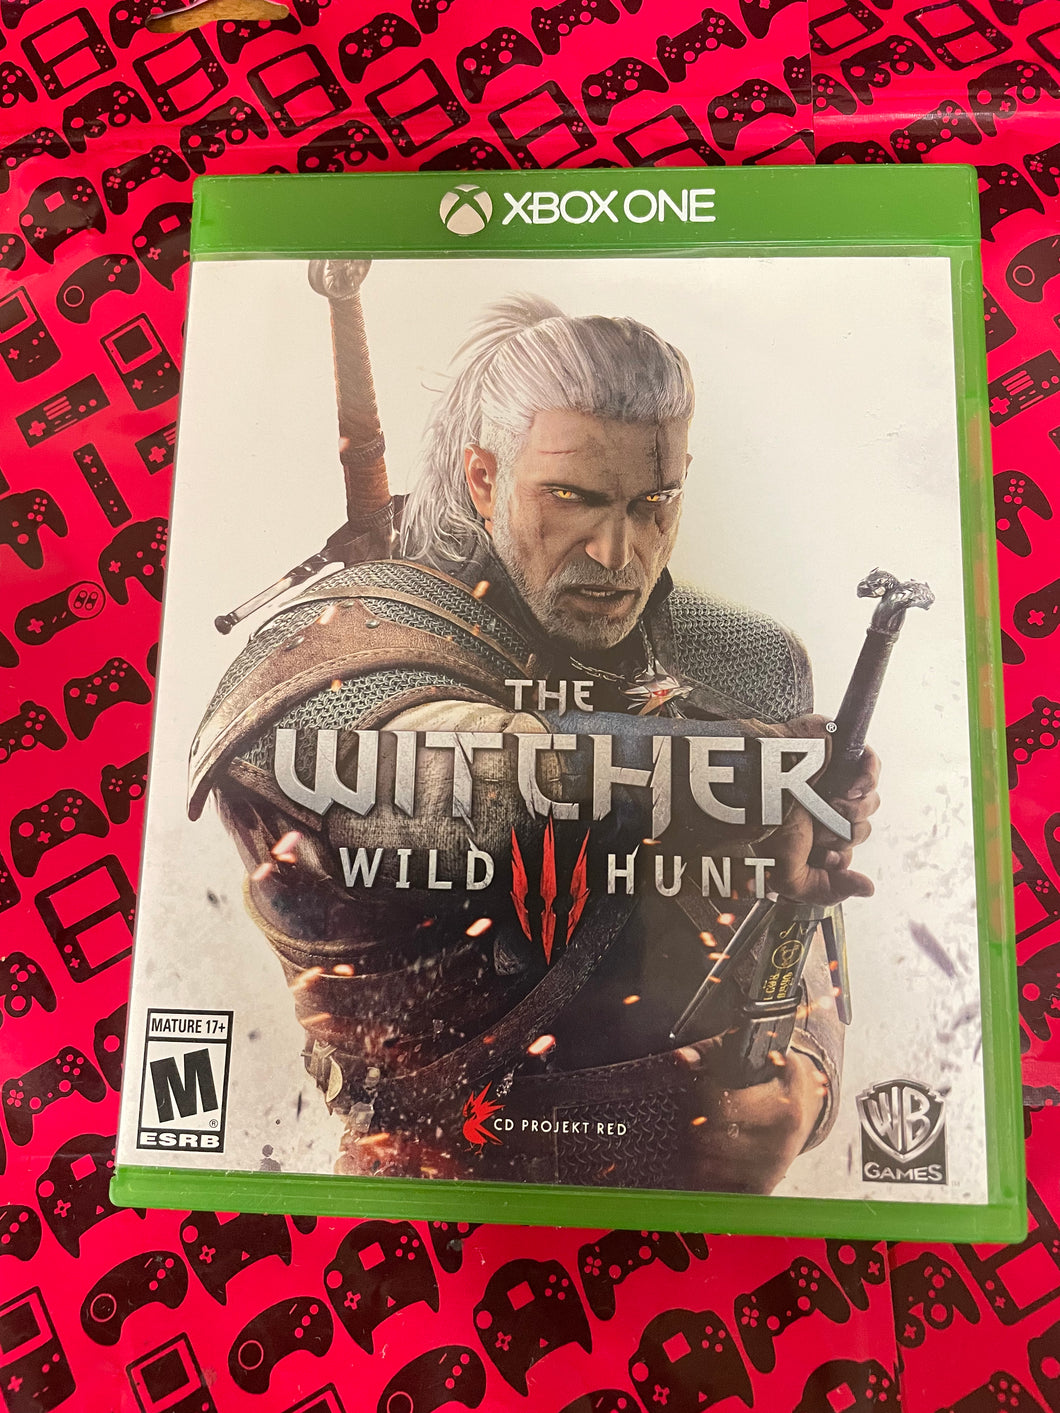 Witcher 3: Wild Hunt Xbox One